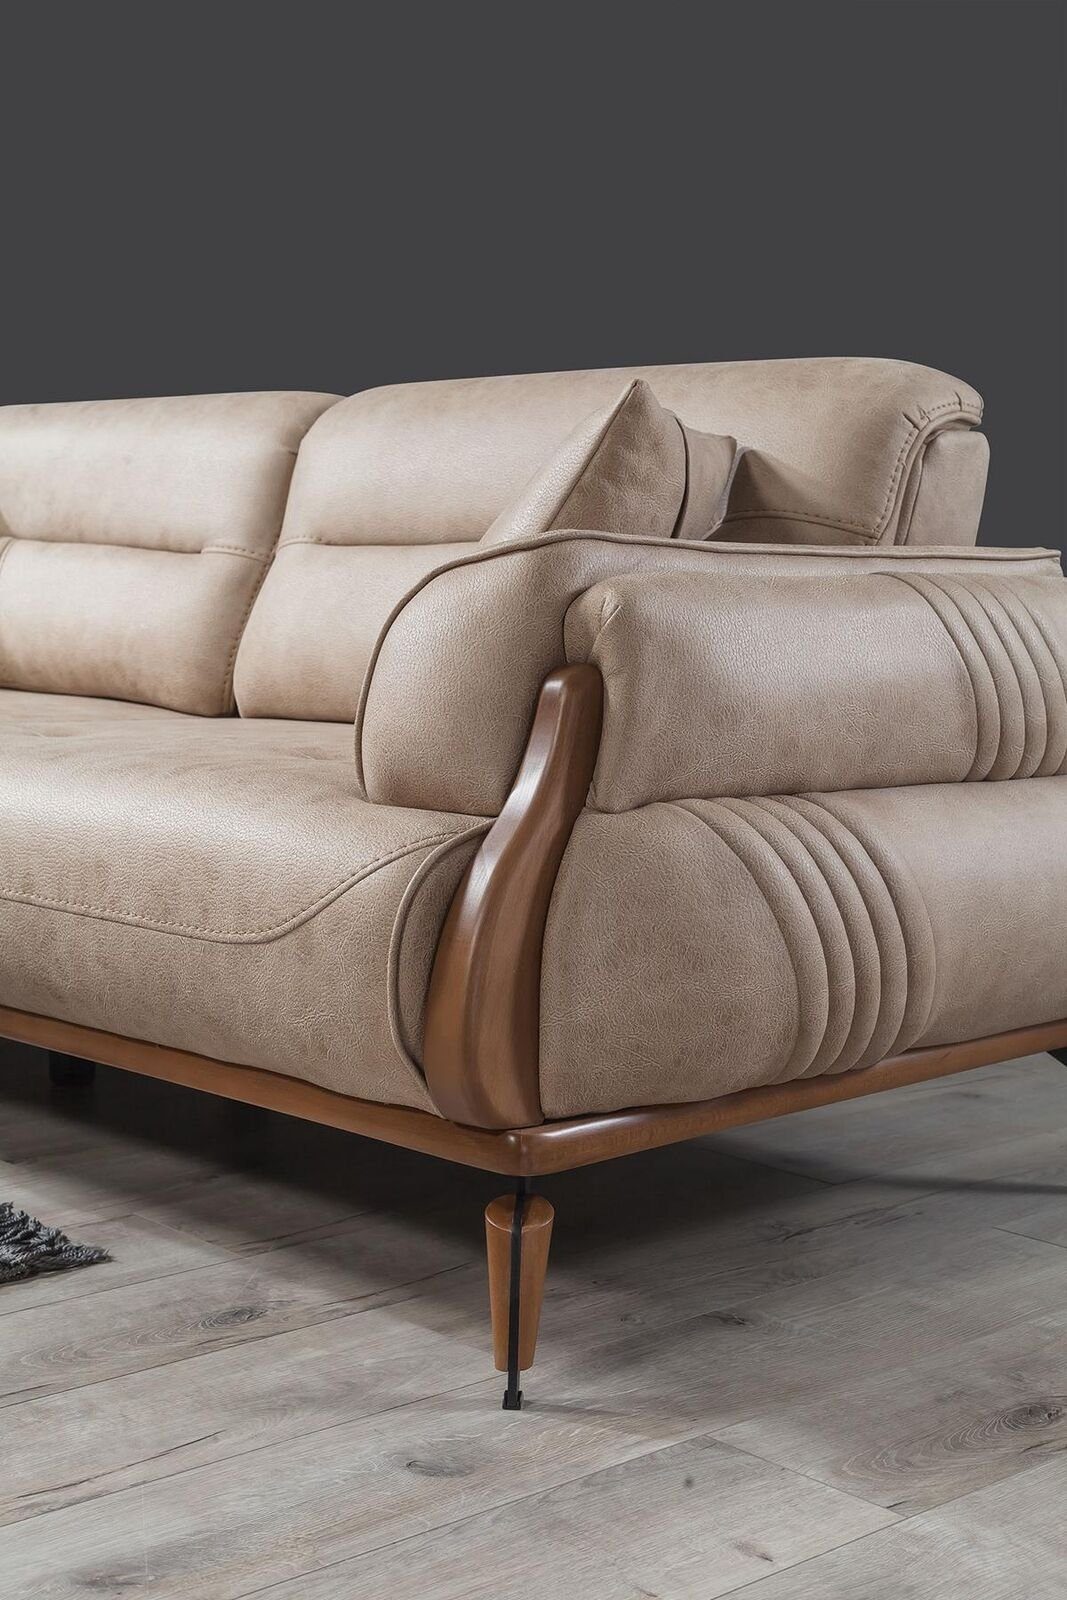 Neu, in Couchen Sofa Luxus Made 1 Sofa Polster Designer JVmoebel Teile, Europa Dreisitzer Sofas Beige Leder